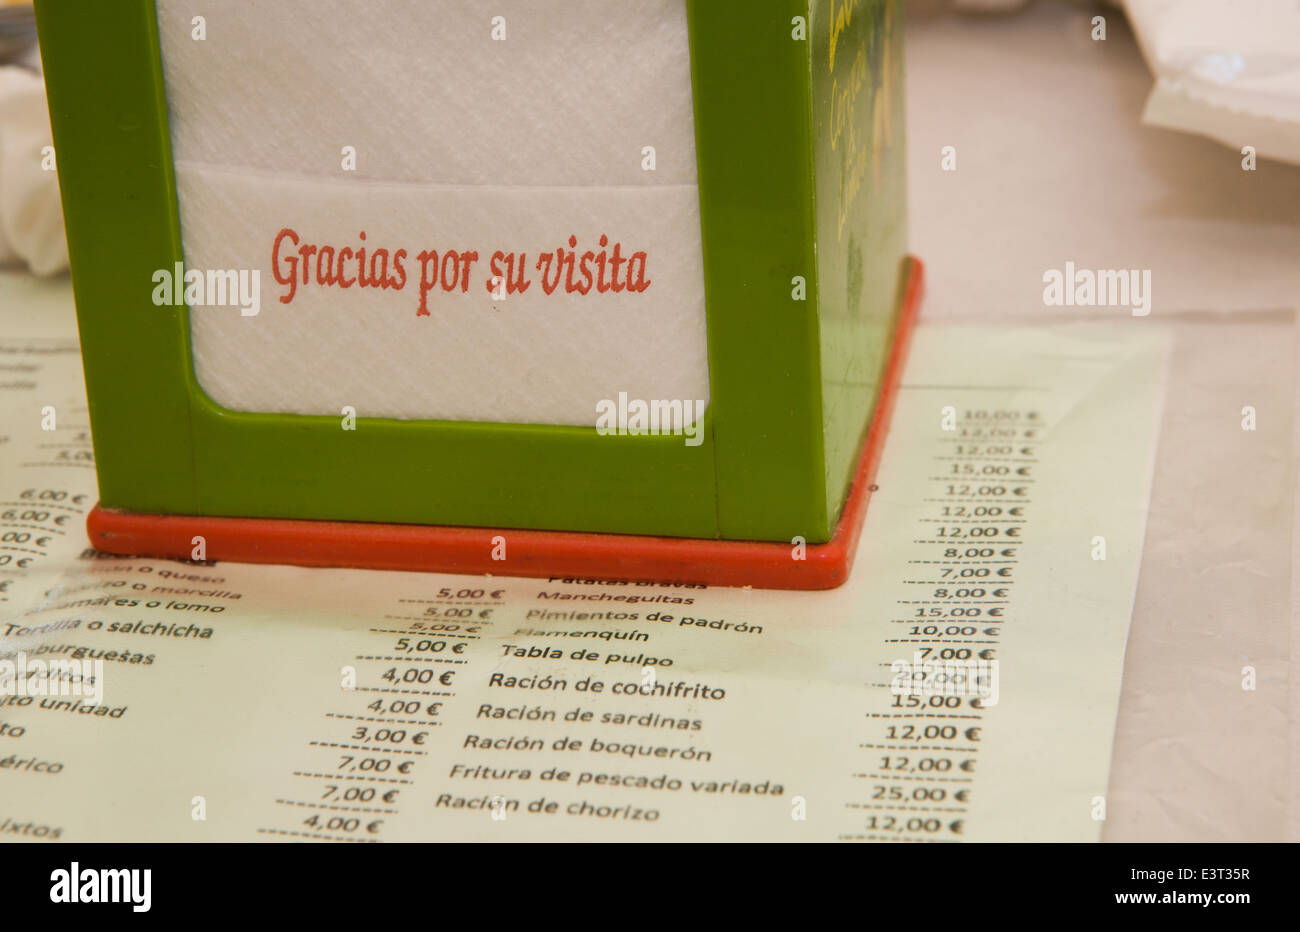 Serviettenhalter über ein Menü-Blatt auf Cordoba Messegelände stehen, Spanien Stockfoto